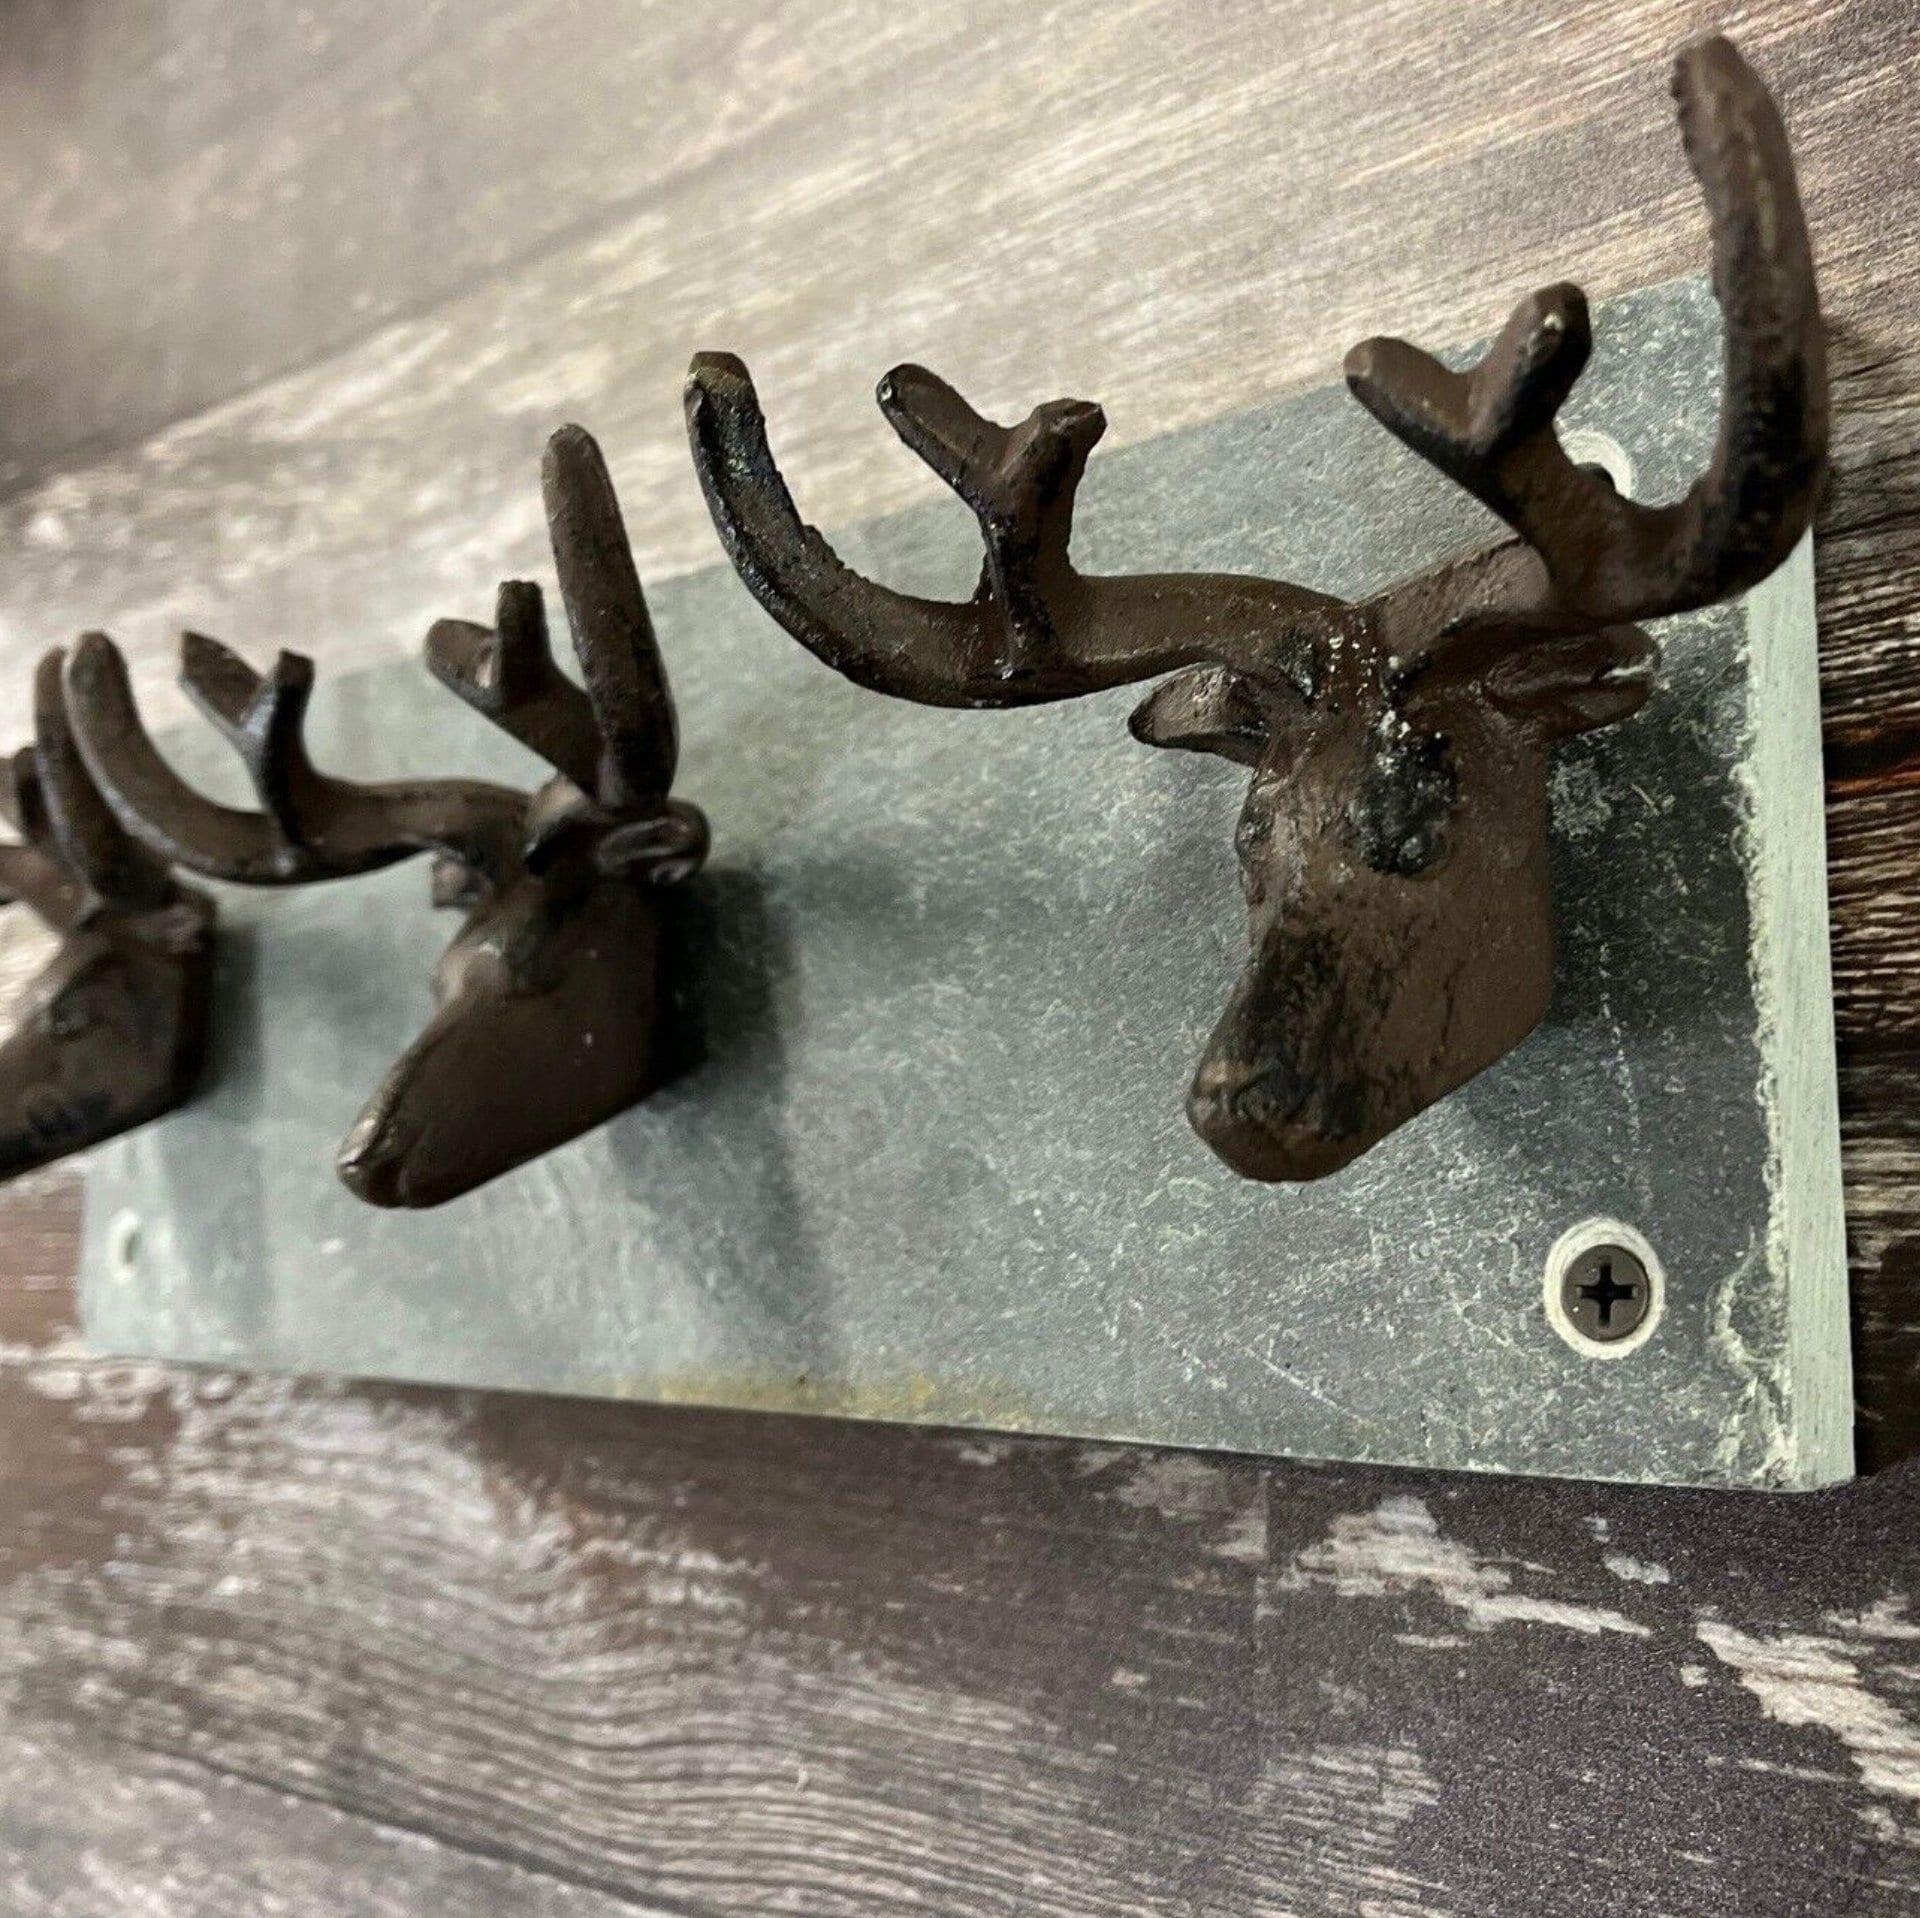 Keksi small key ring in Finnish reindeer horn